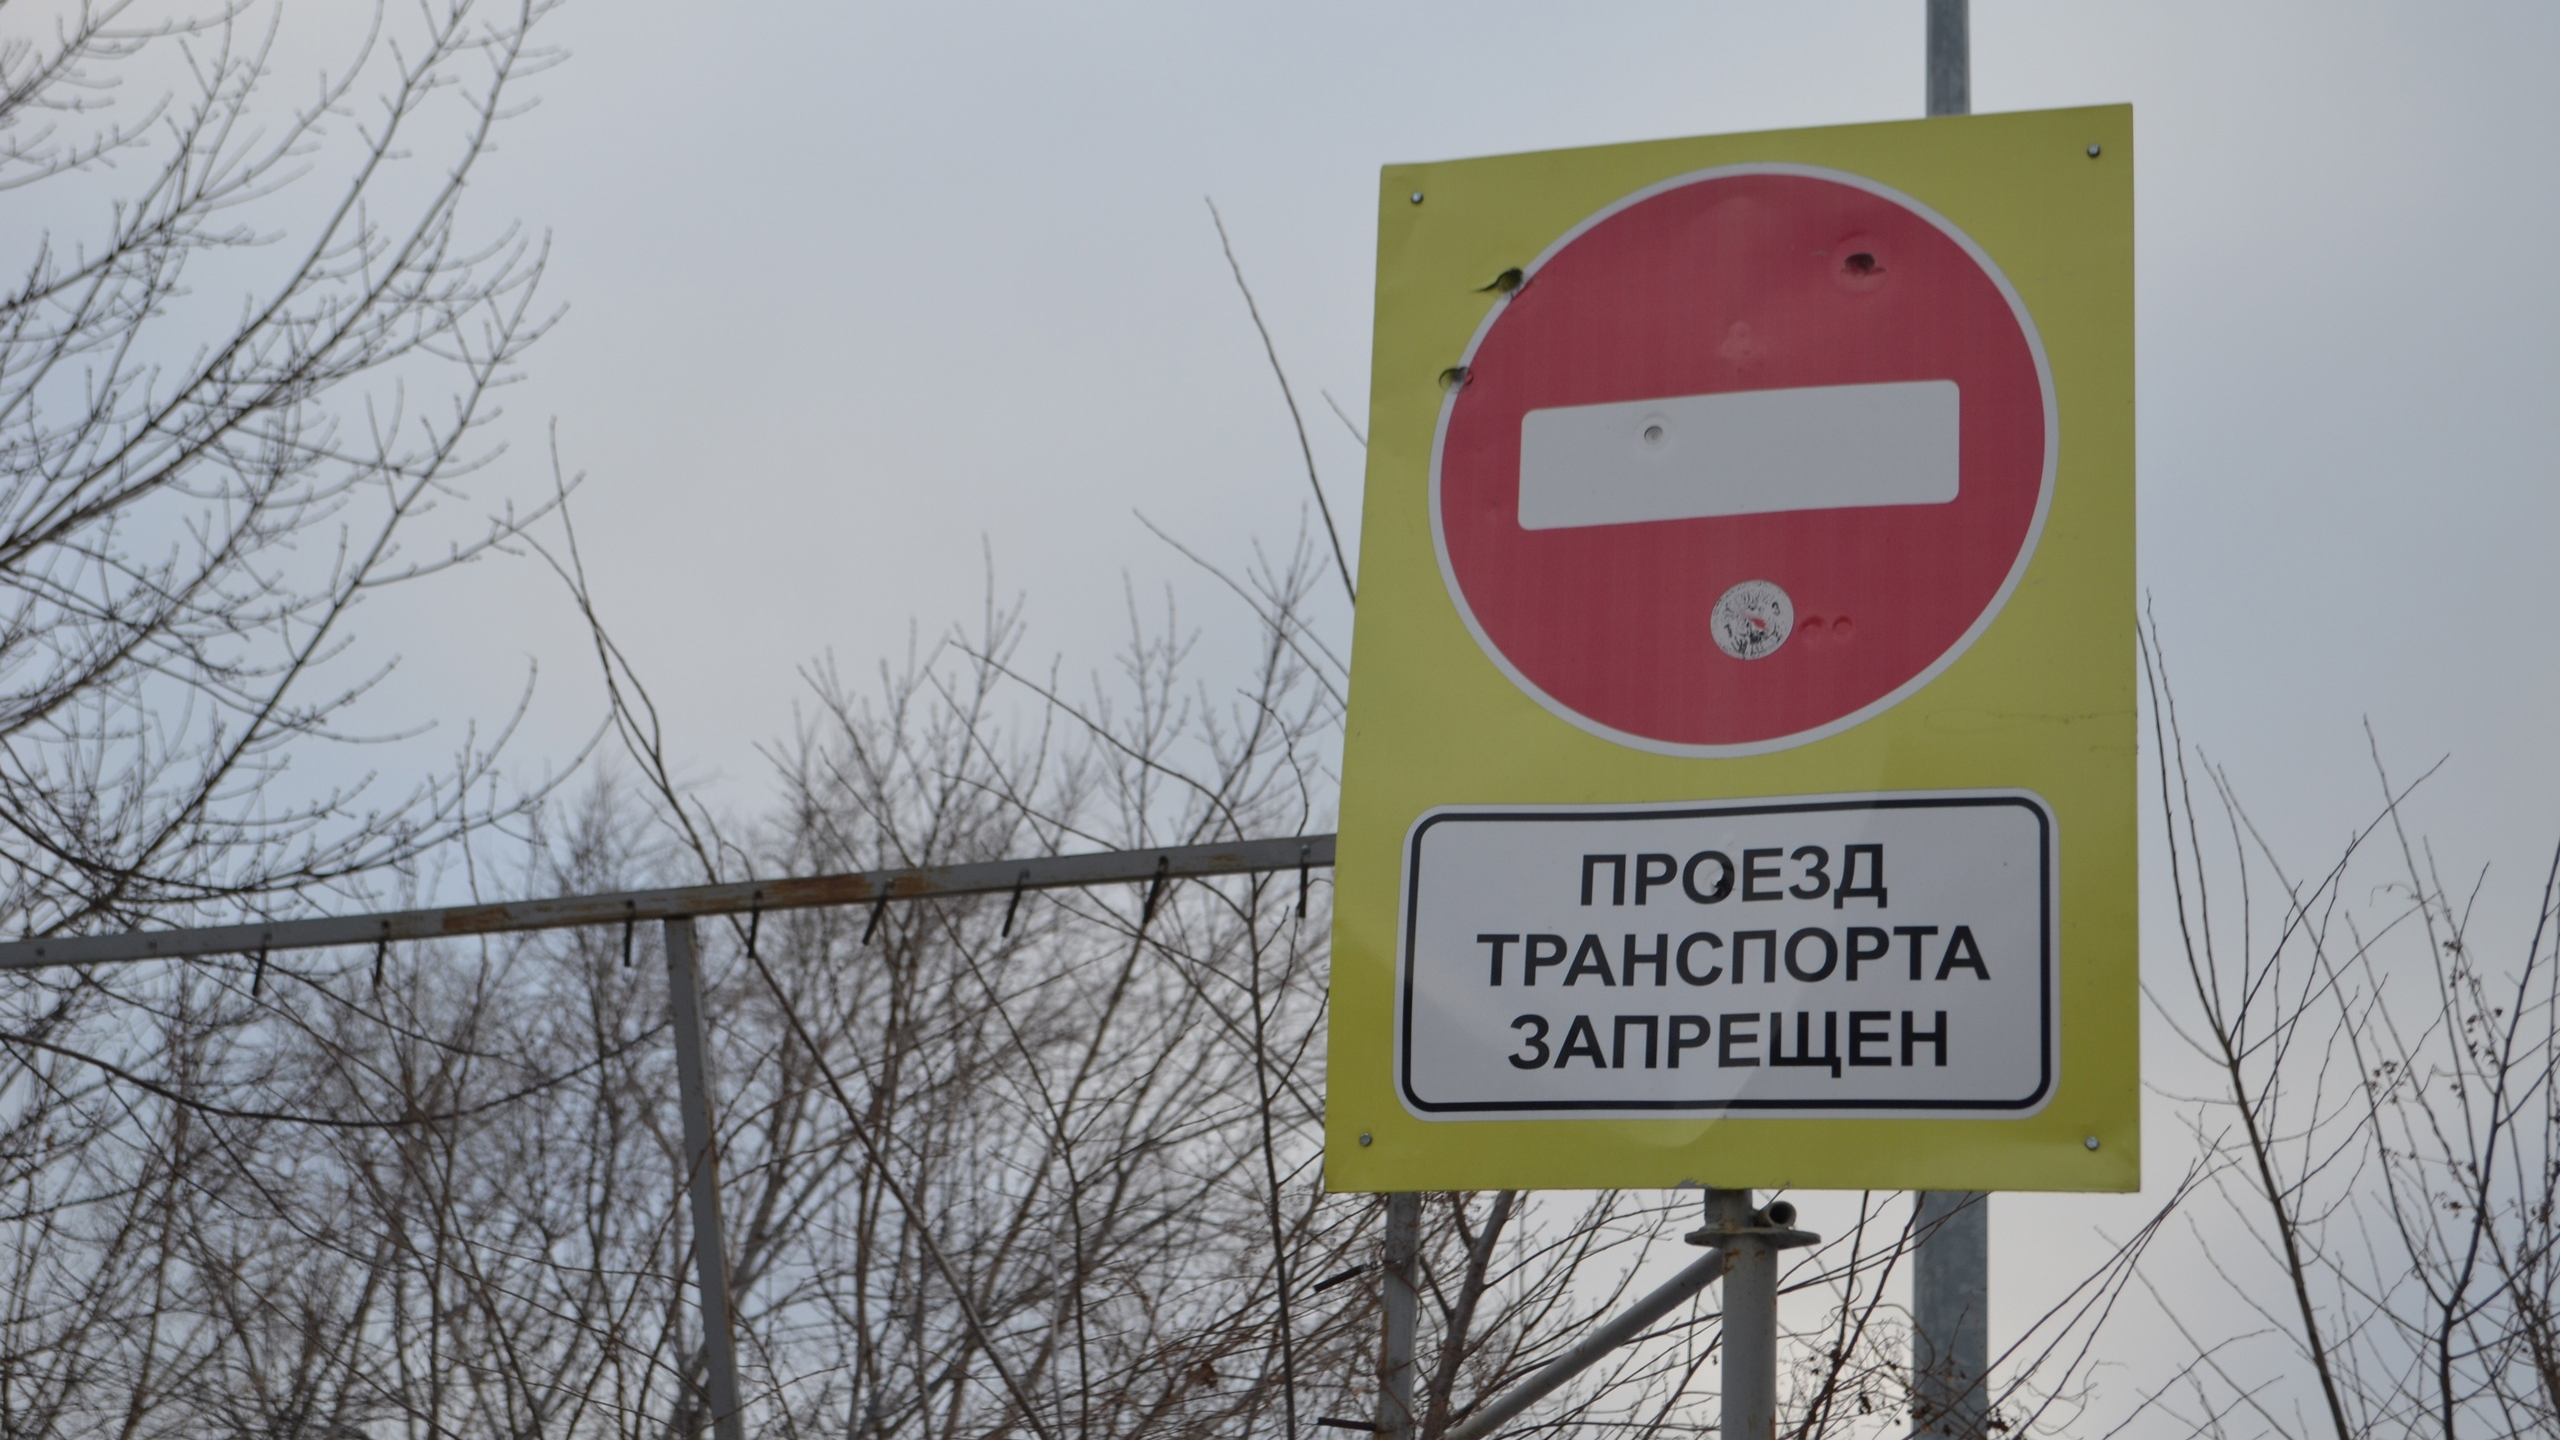 21 марта временно ограничат движение транспортных средств в Ленинском районе Ульяновска